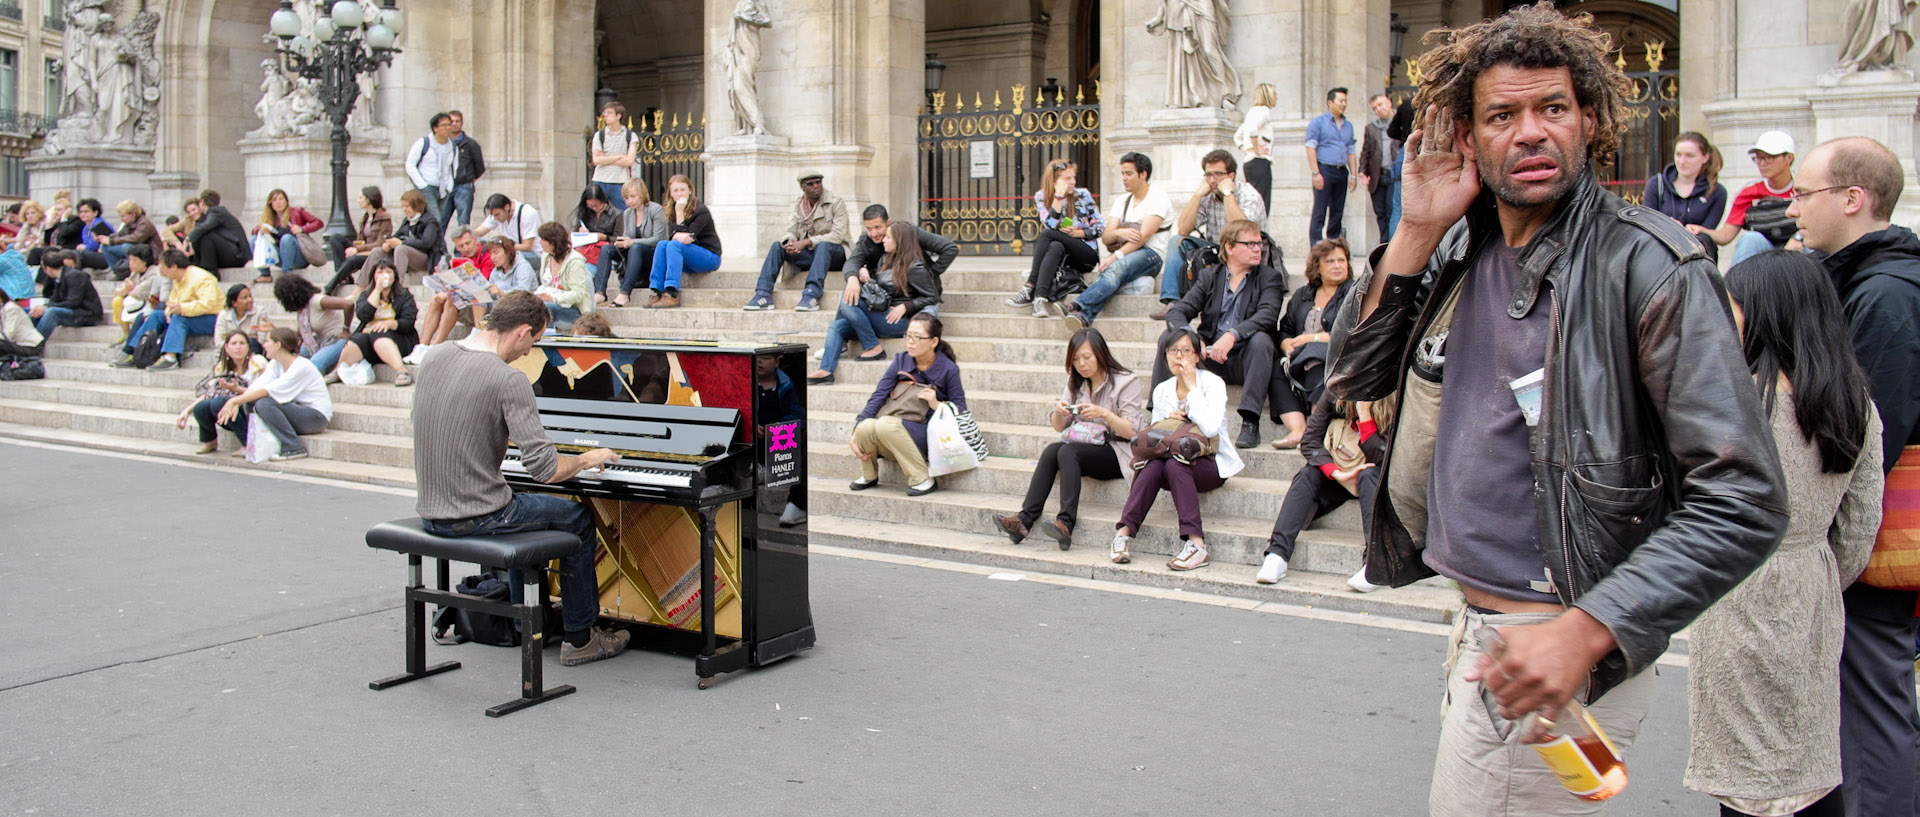 Pendant un concert de piano sur le parvis de l'Opéra Garnier, à Paris.